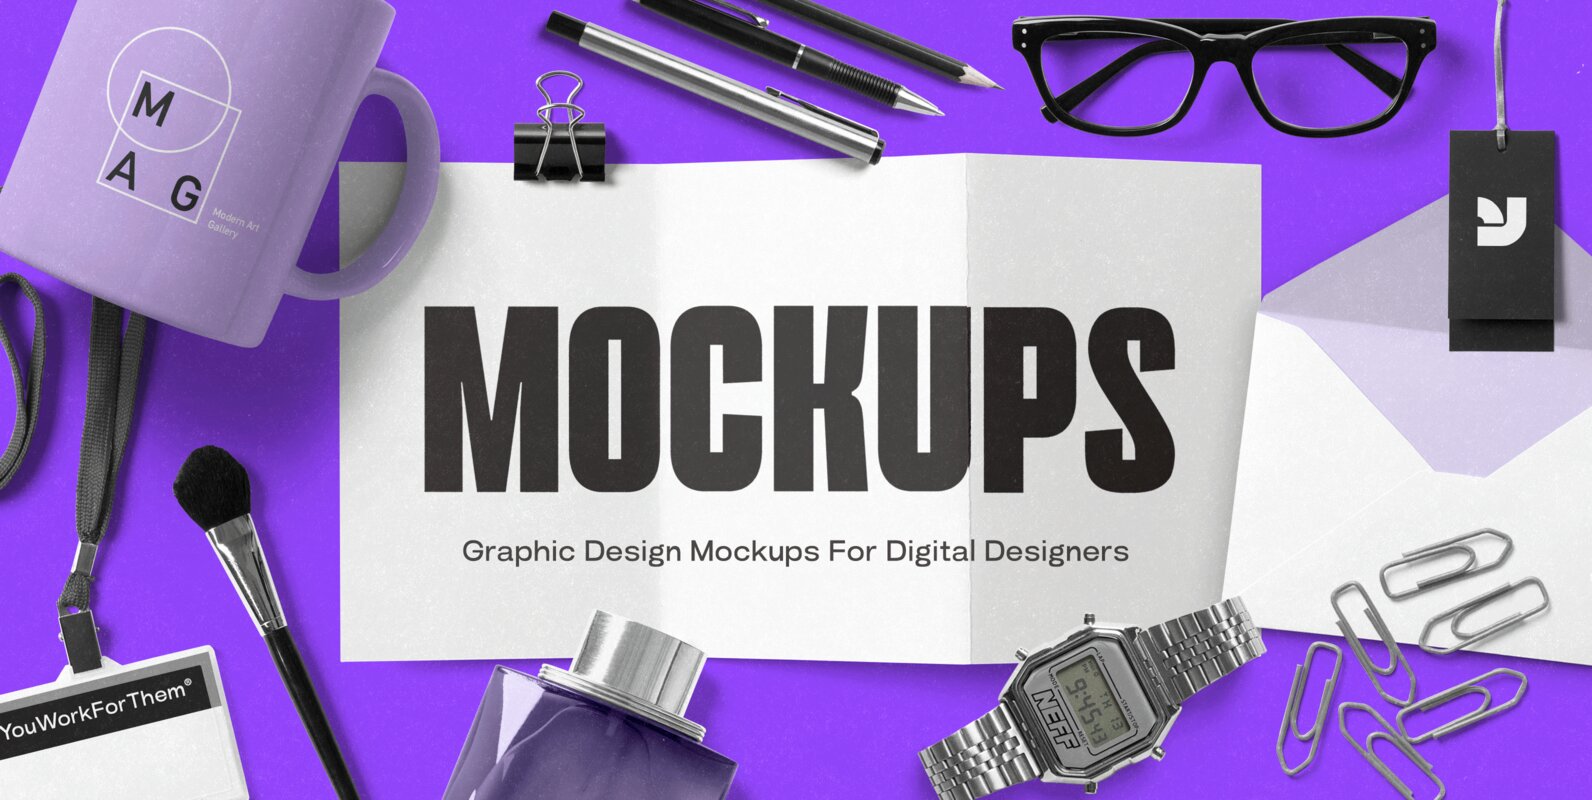 Graphic Design Mockups for Digital Designers